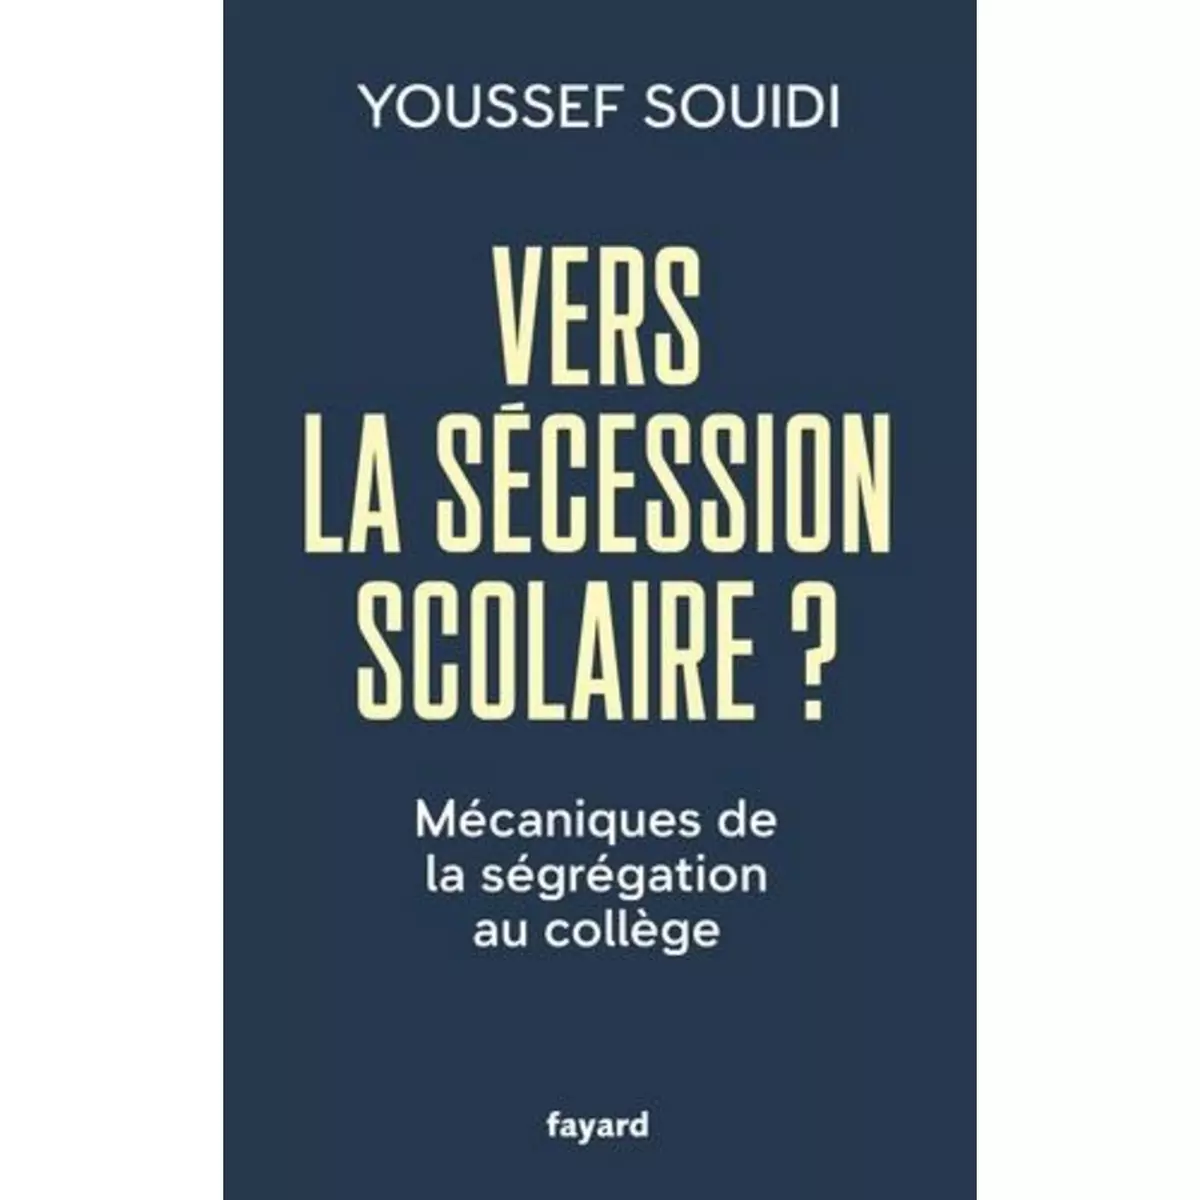  VERS LA SECESSION SCOLAIRE ? MECANIQUES DE LA SEGREGATION AU COLLEGE, Souidi Youssef